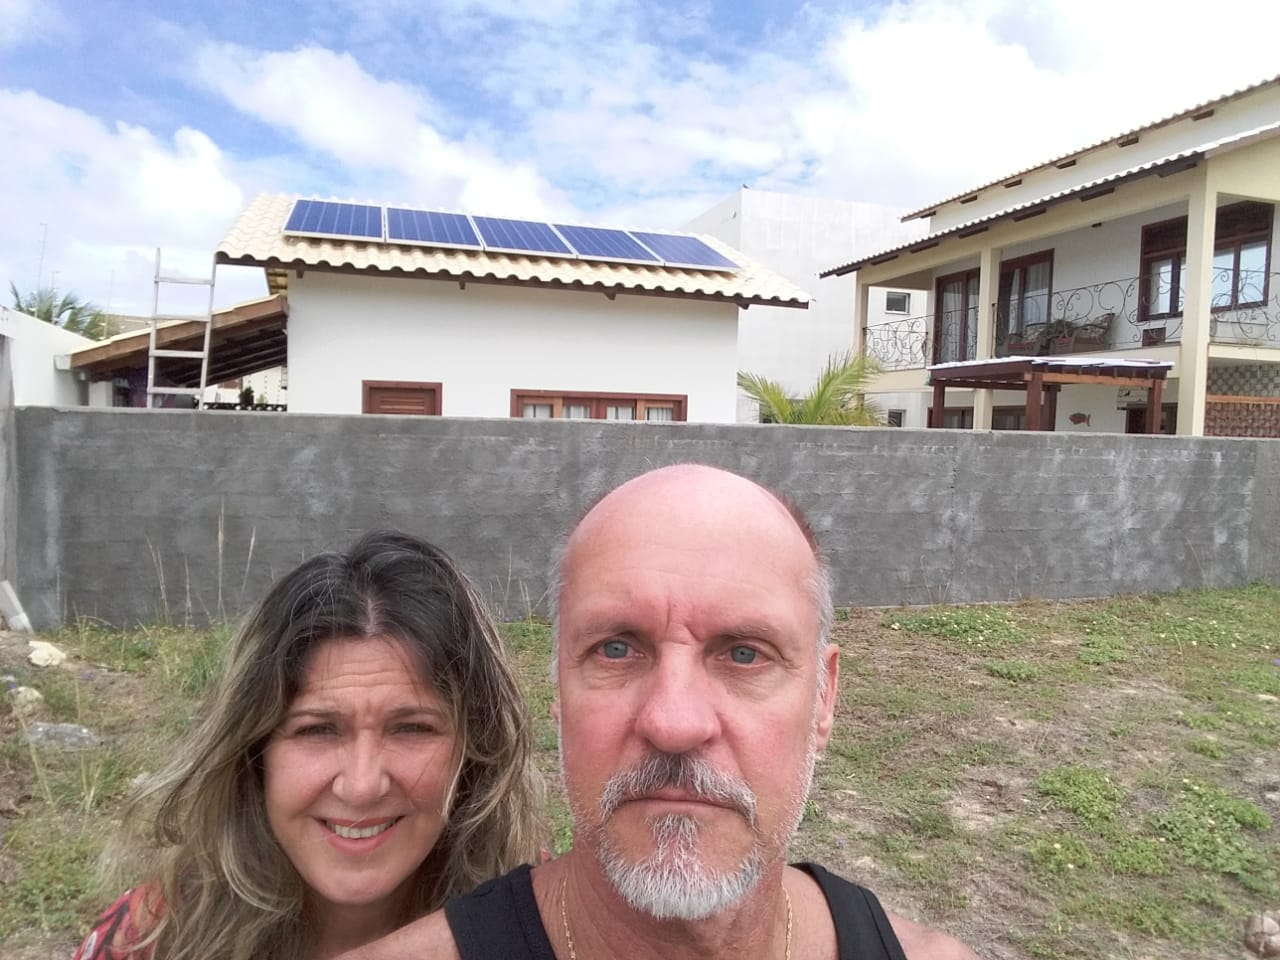 Energia solar: mercado de painéis fotovoltaicos ganha espaço em Sergipe 